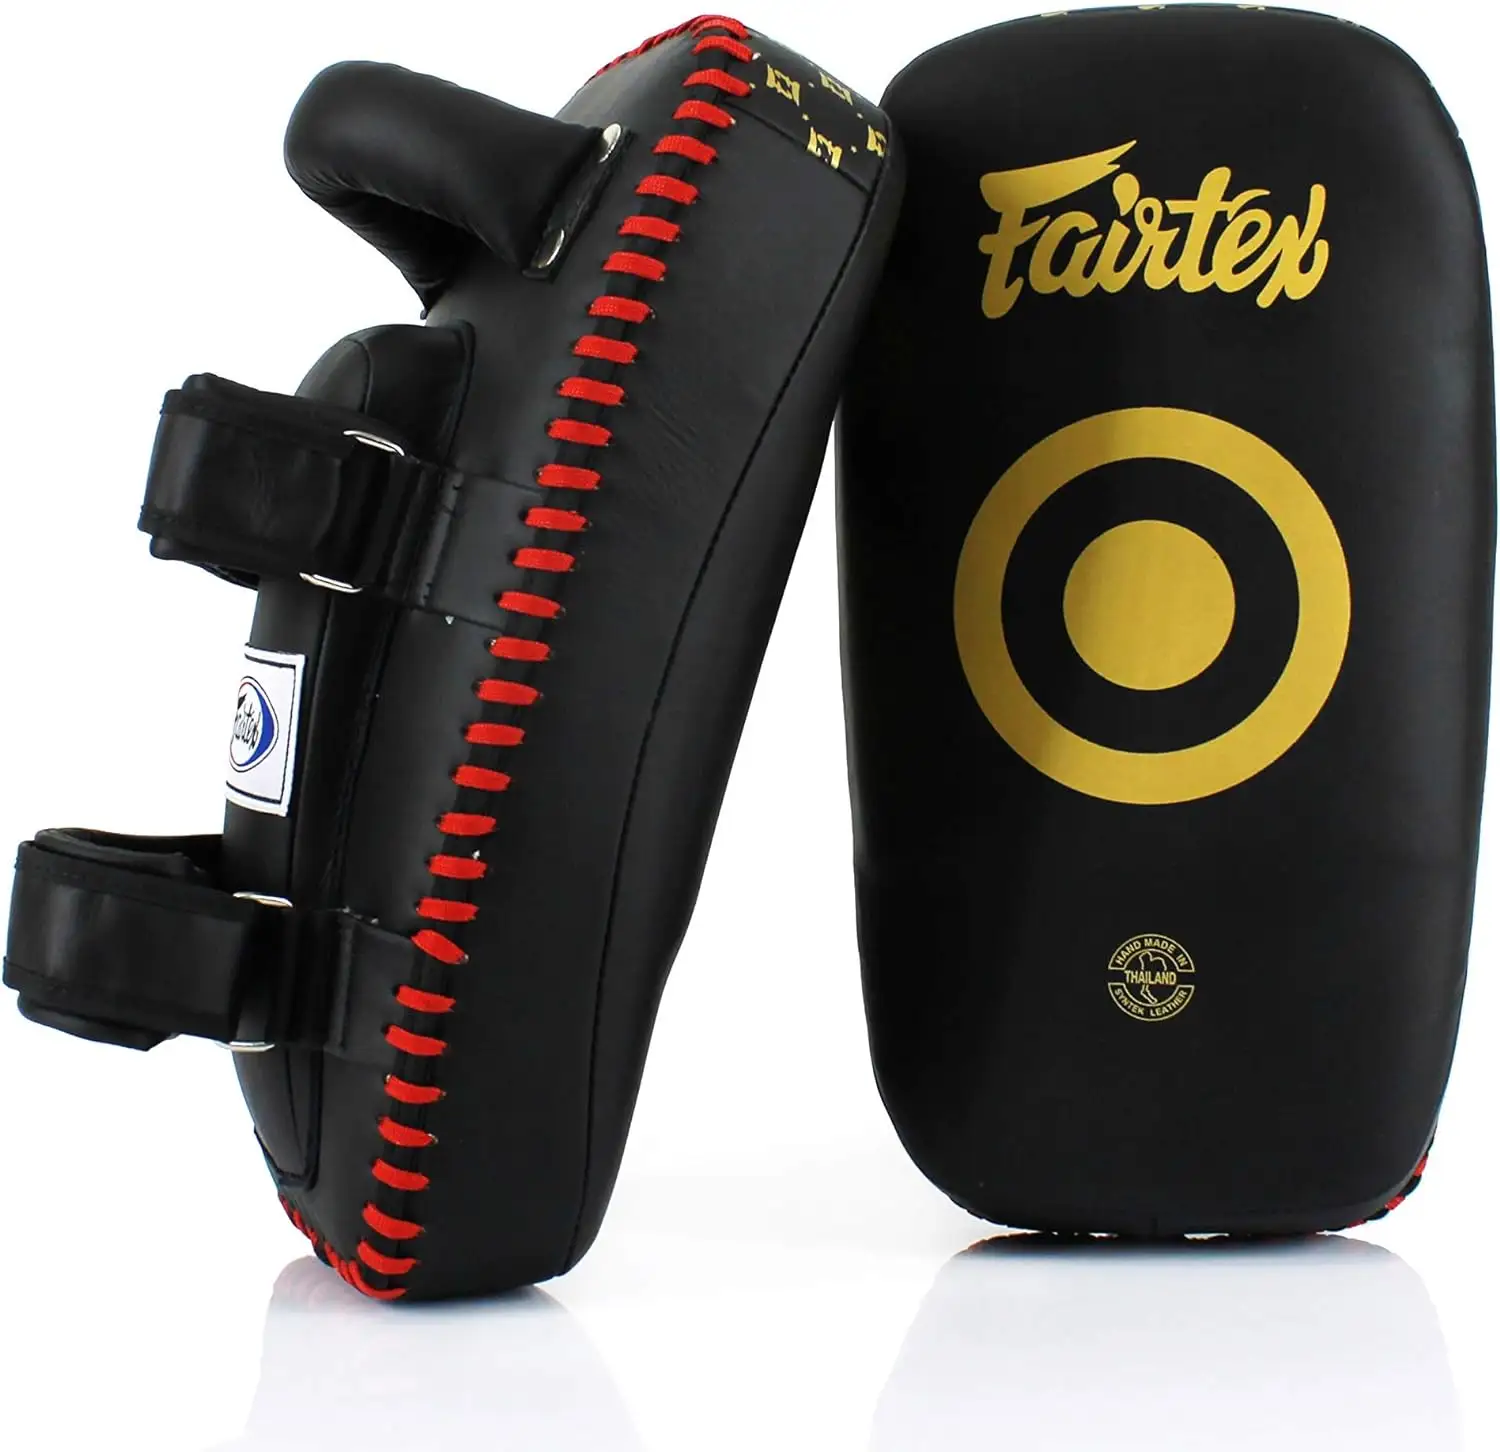 2023 мишень Fairtex Thai Pad для MMA Karate Free Fight Sports Entertainment тренажерный зал боксерские тренировочные Fairtex Thai Pads